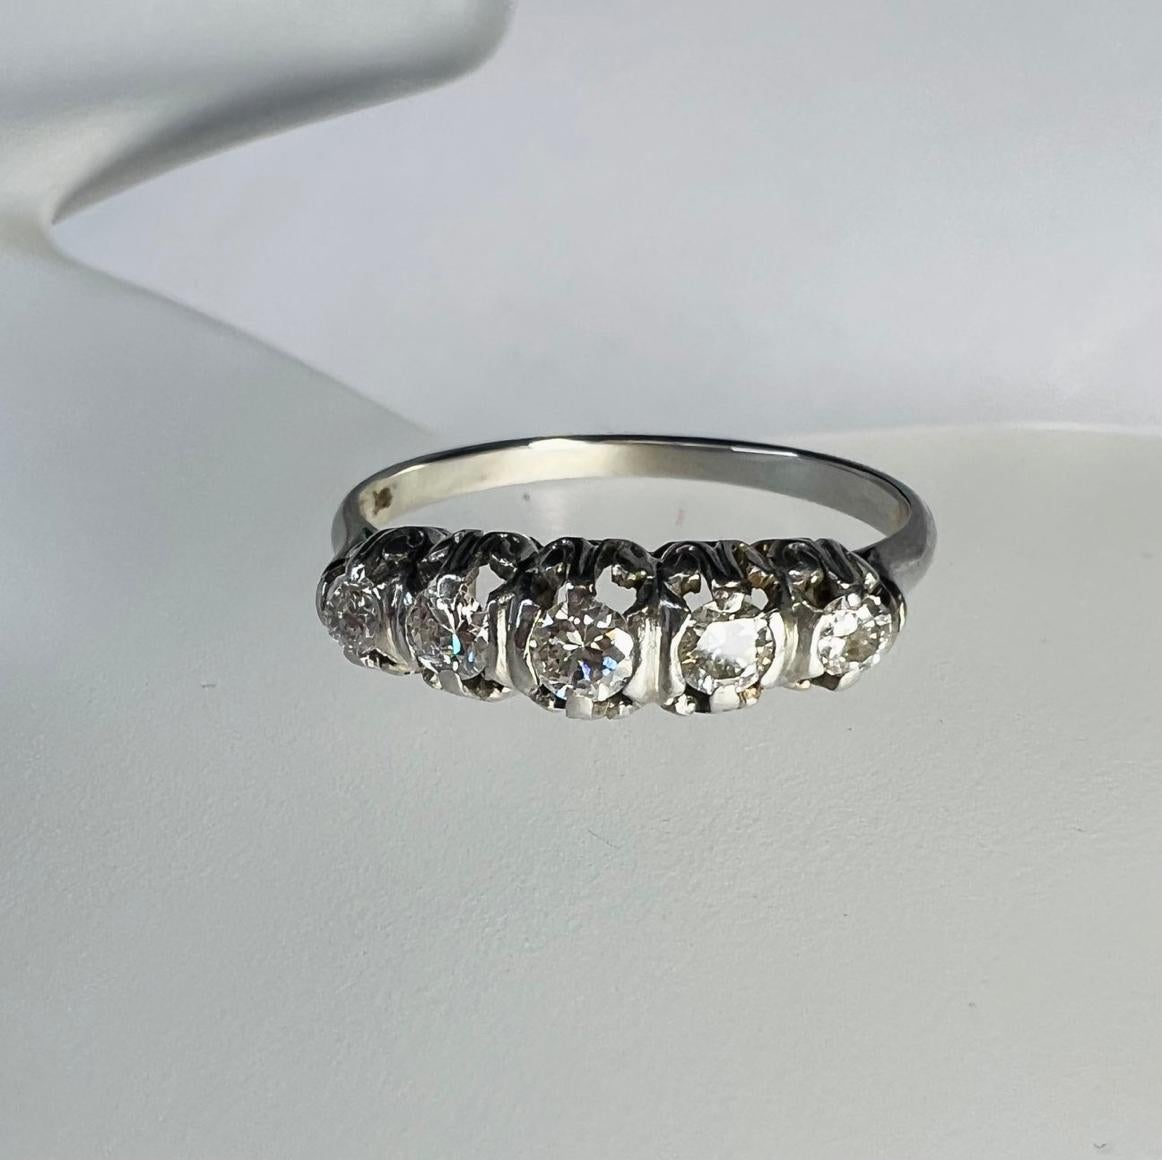 Vorstellen einer,

Ein edwardianischer Ring mit Diamanten auf einem Weißgoldband in Zackenform.

Die Diamanten sind natürlich und Erde abgebaut etwa .35ctw

Der Ring ist 4mm breit, 4mm Steigung und 1mm Schaft

Gewicht 2.56G

Markiert 18K

Wird in